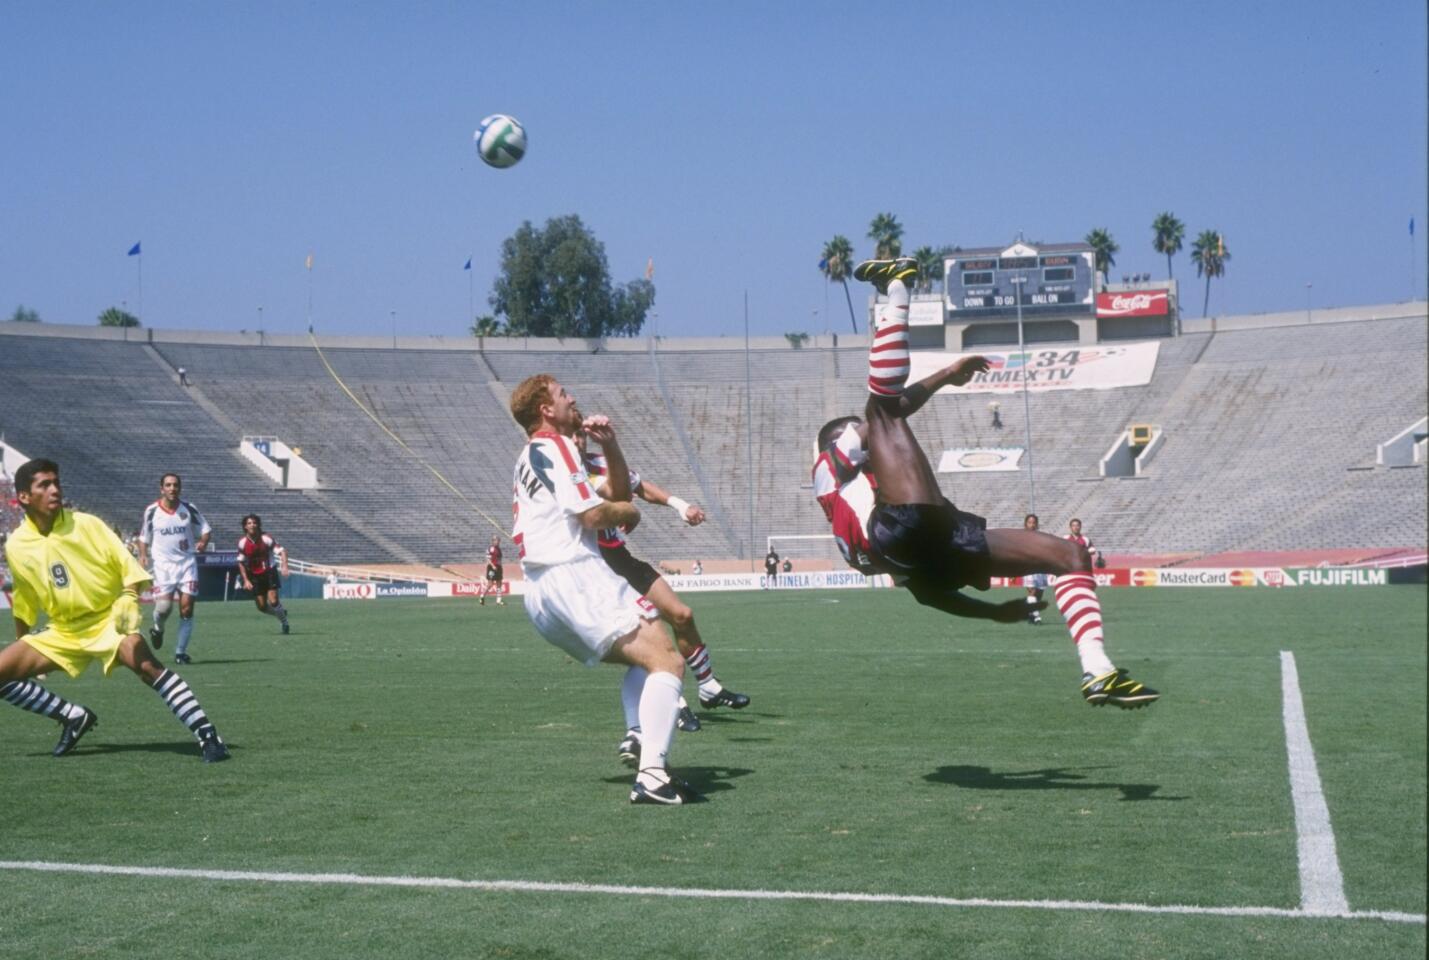 El Galaxy de Los Ángeles es uno de los clubes más importantes del futbol estadounidense, que cumple 25 años en este 2020. A pesar de la pausa por la pandemia, el conjunto galáctico ha celebrado su rica historia este año pues fue una de las franquicias originales de la MLS, la cual comenzó en 1996. Con elementos como Jorge Campos, Eduardo Hurtado, Mauricio Cienfuegos y Cobi Jones, el equipo galáctico comenzó jugando en el Rose Bowl de Pasadena. Con el pasar de los años, llegó a ganar 5 trofeos de la MLS, pero todo comenzó en 1996, en aquella temporada que lograron el subcampeonato.